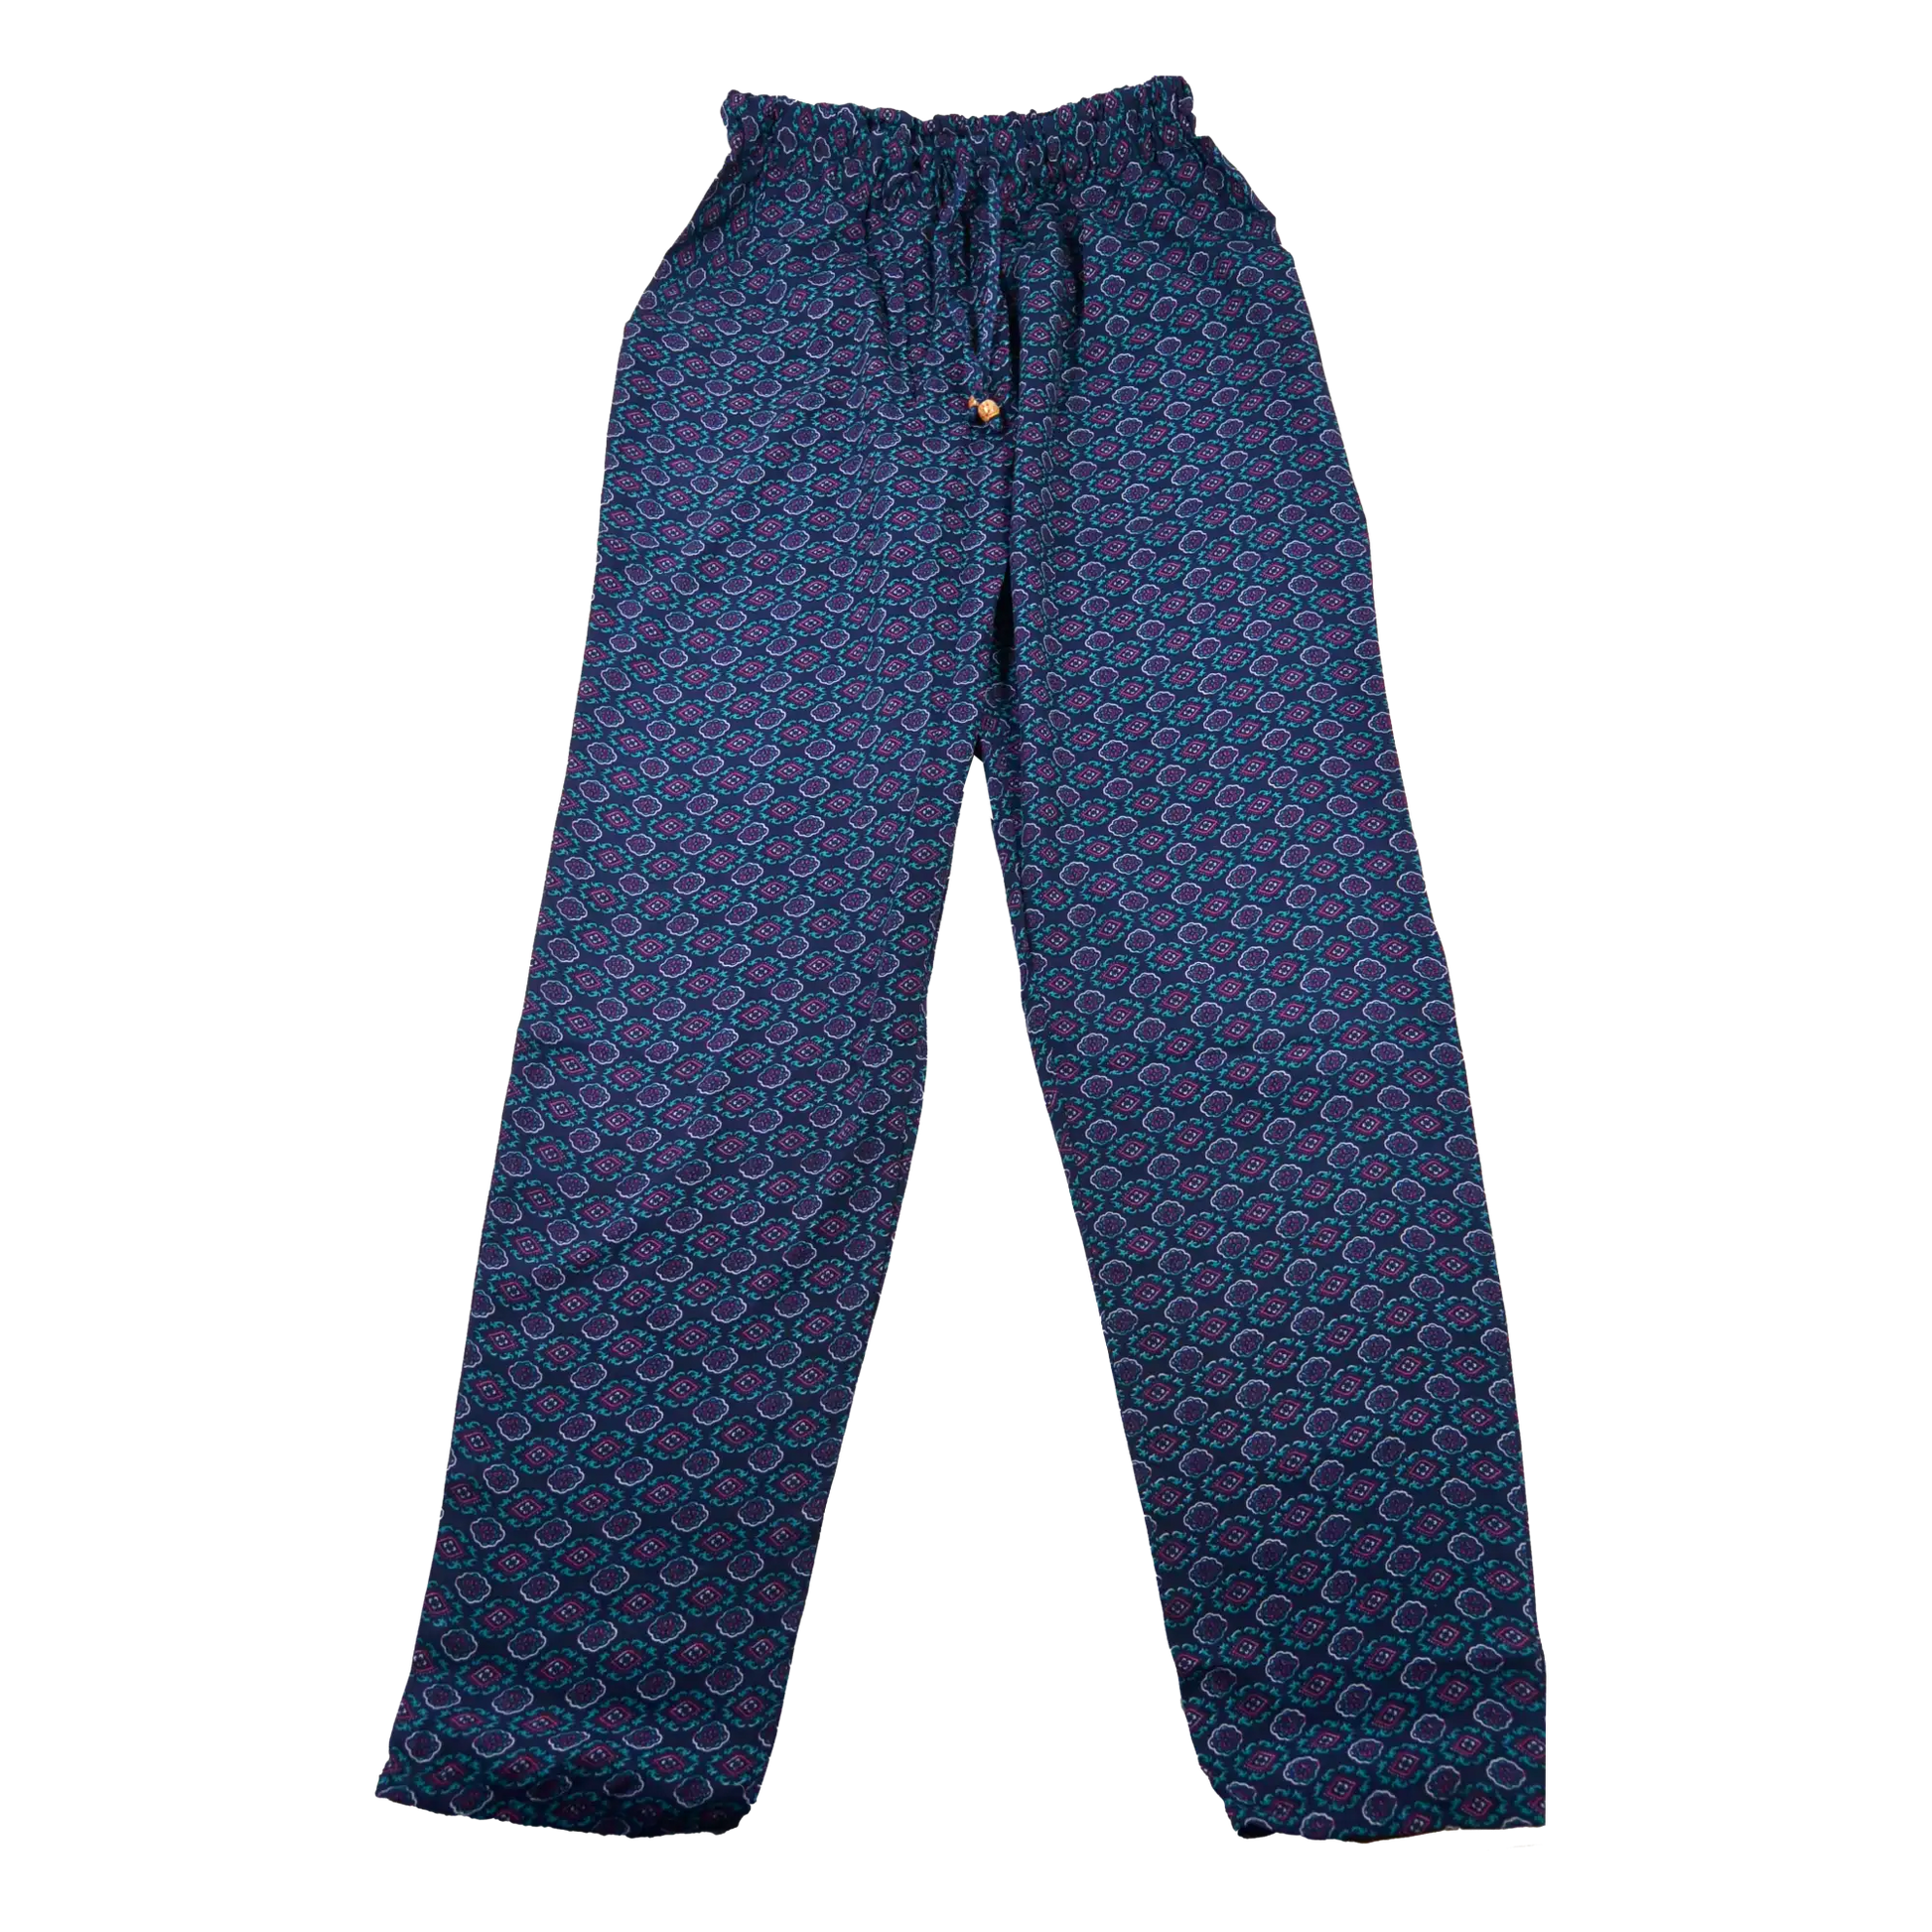 Hose aus Polyester, Marineblau Muster mit elastischen Bund und Kordelzug am Saum . Zwei Holzperlen schmücken die Kordelenden. Eingrifftasche an beiden Seiten.